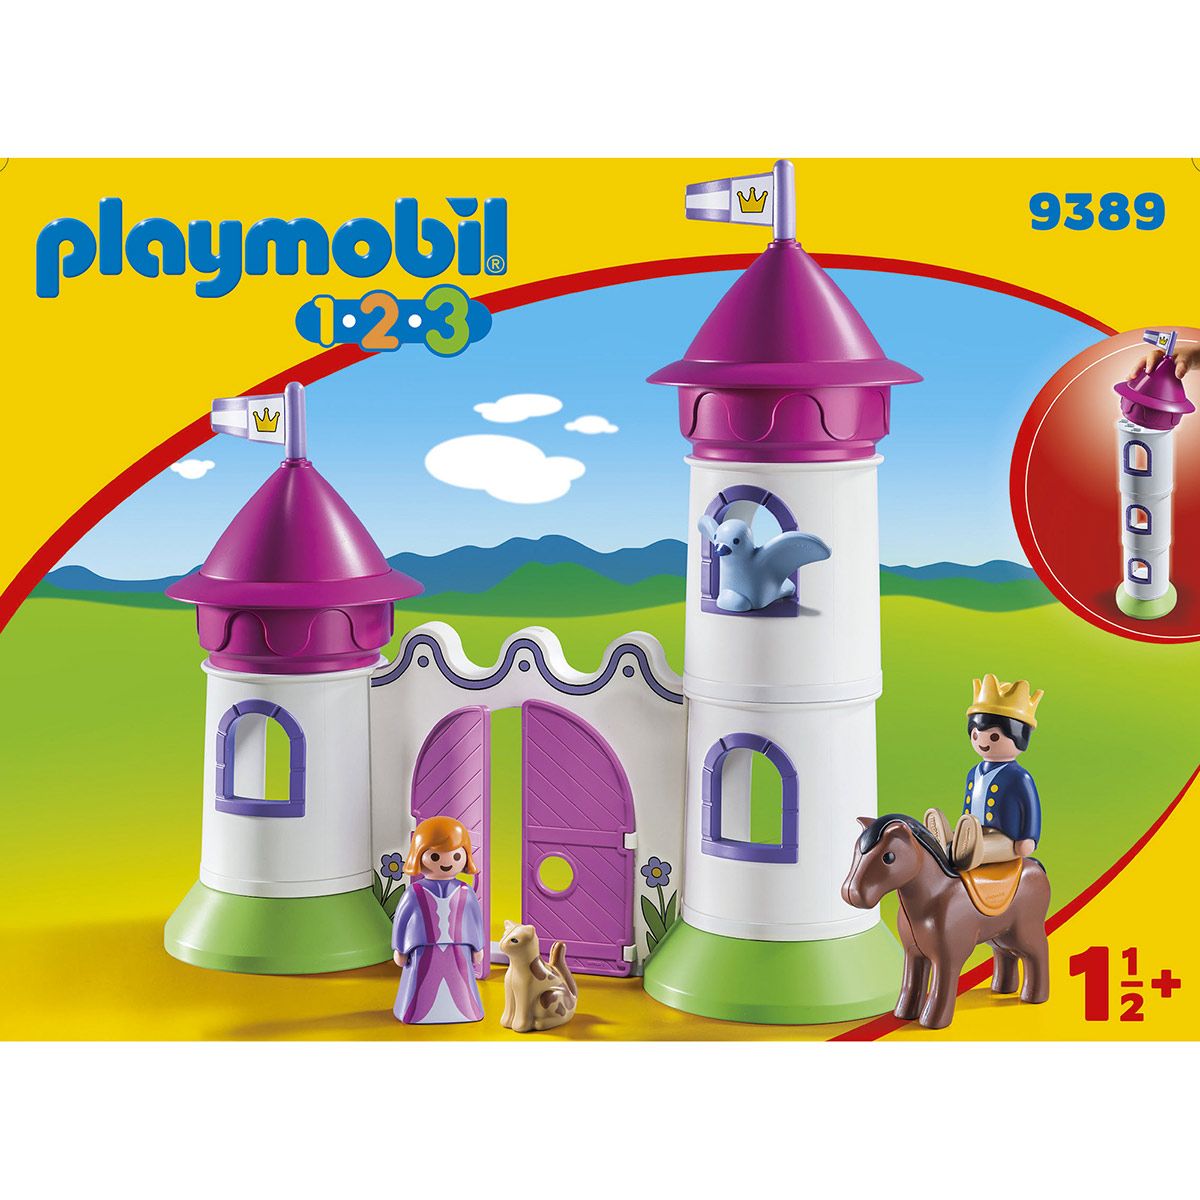 playmobil 123 9389